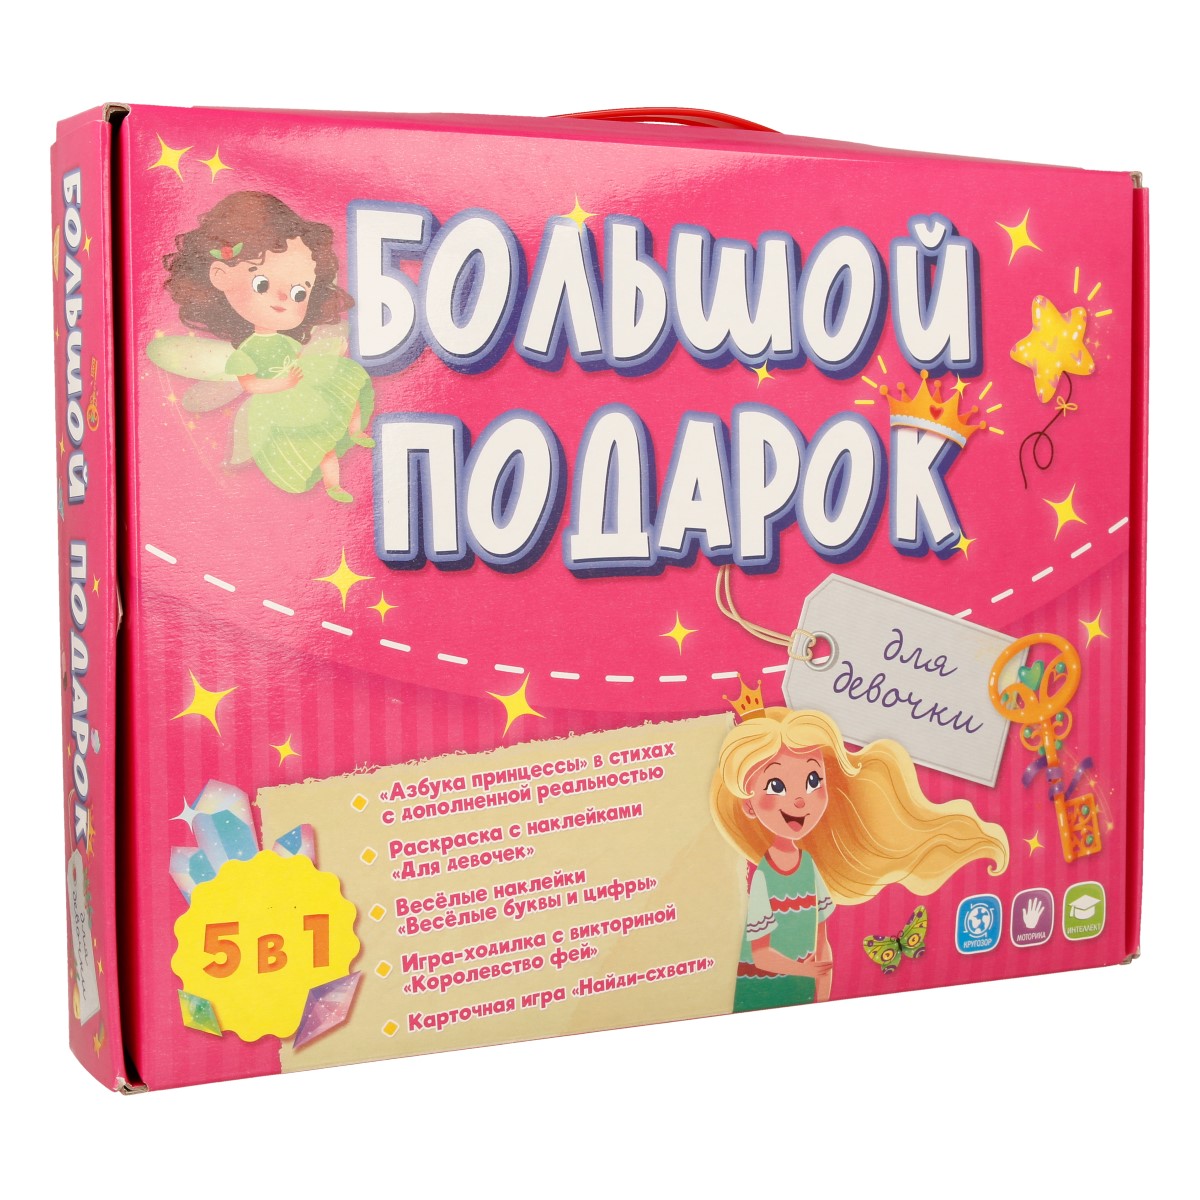 Купить подарочные упаковки в интернет магазине gkhyarovoe.ru